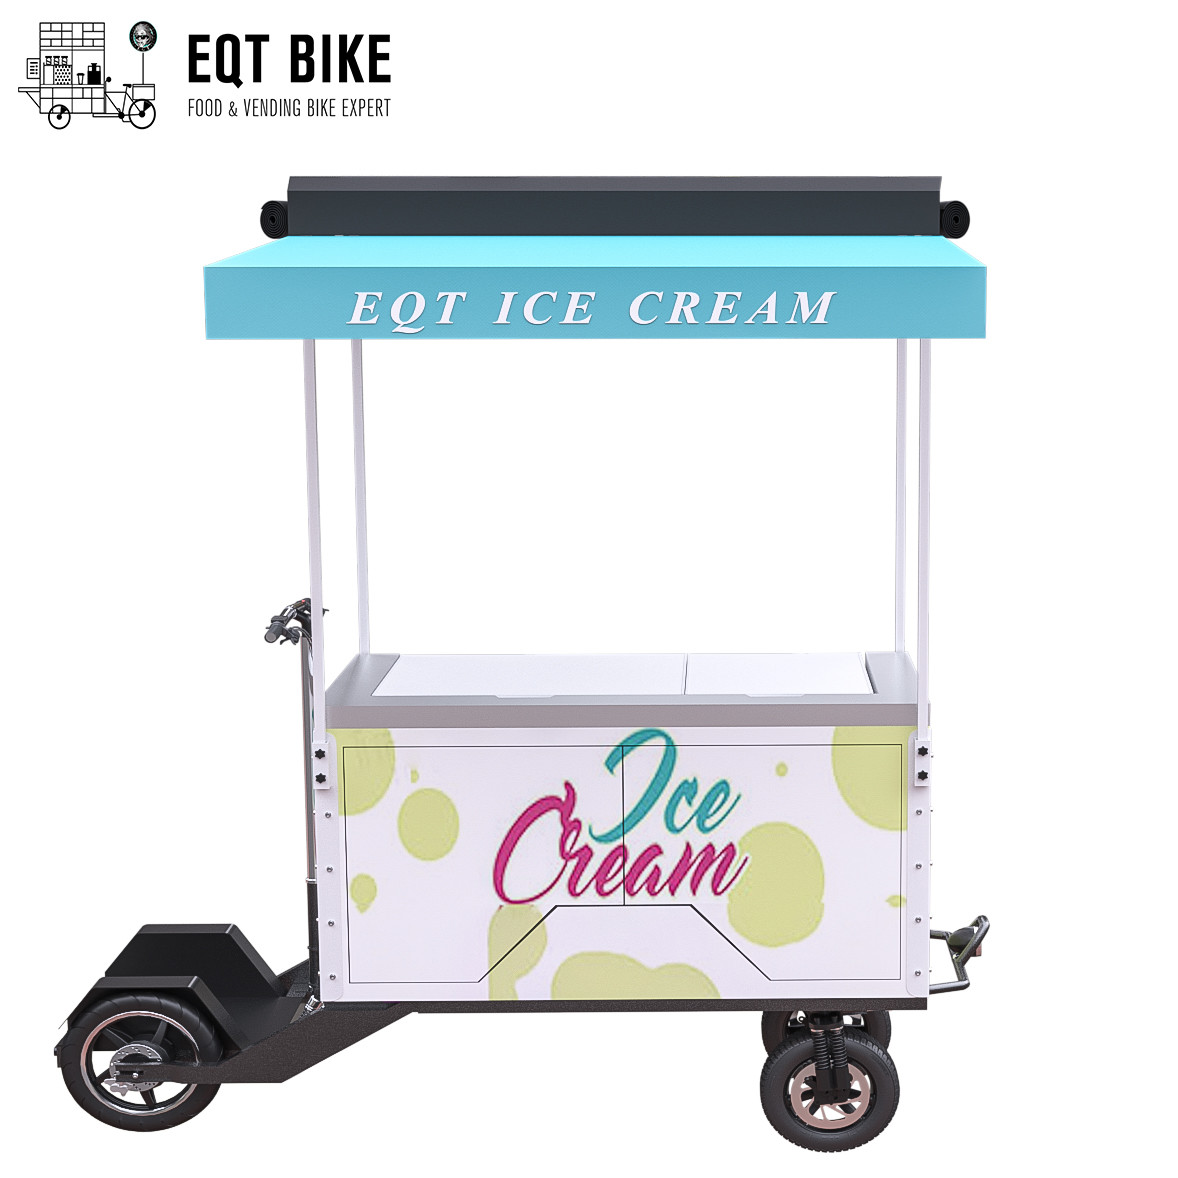 Disk Frenli Dondurma Bisiklet Arabası 18KM/H Dondurma Otomatı Üç Tekerlekli Bisiklet